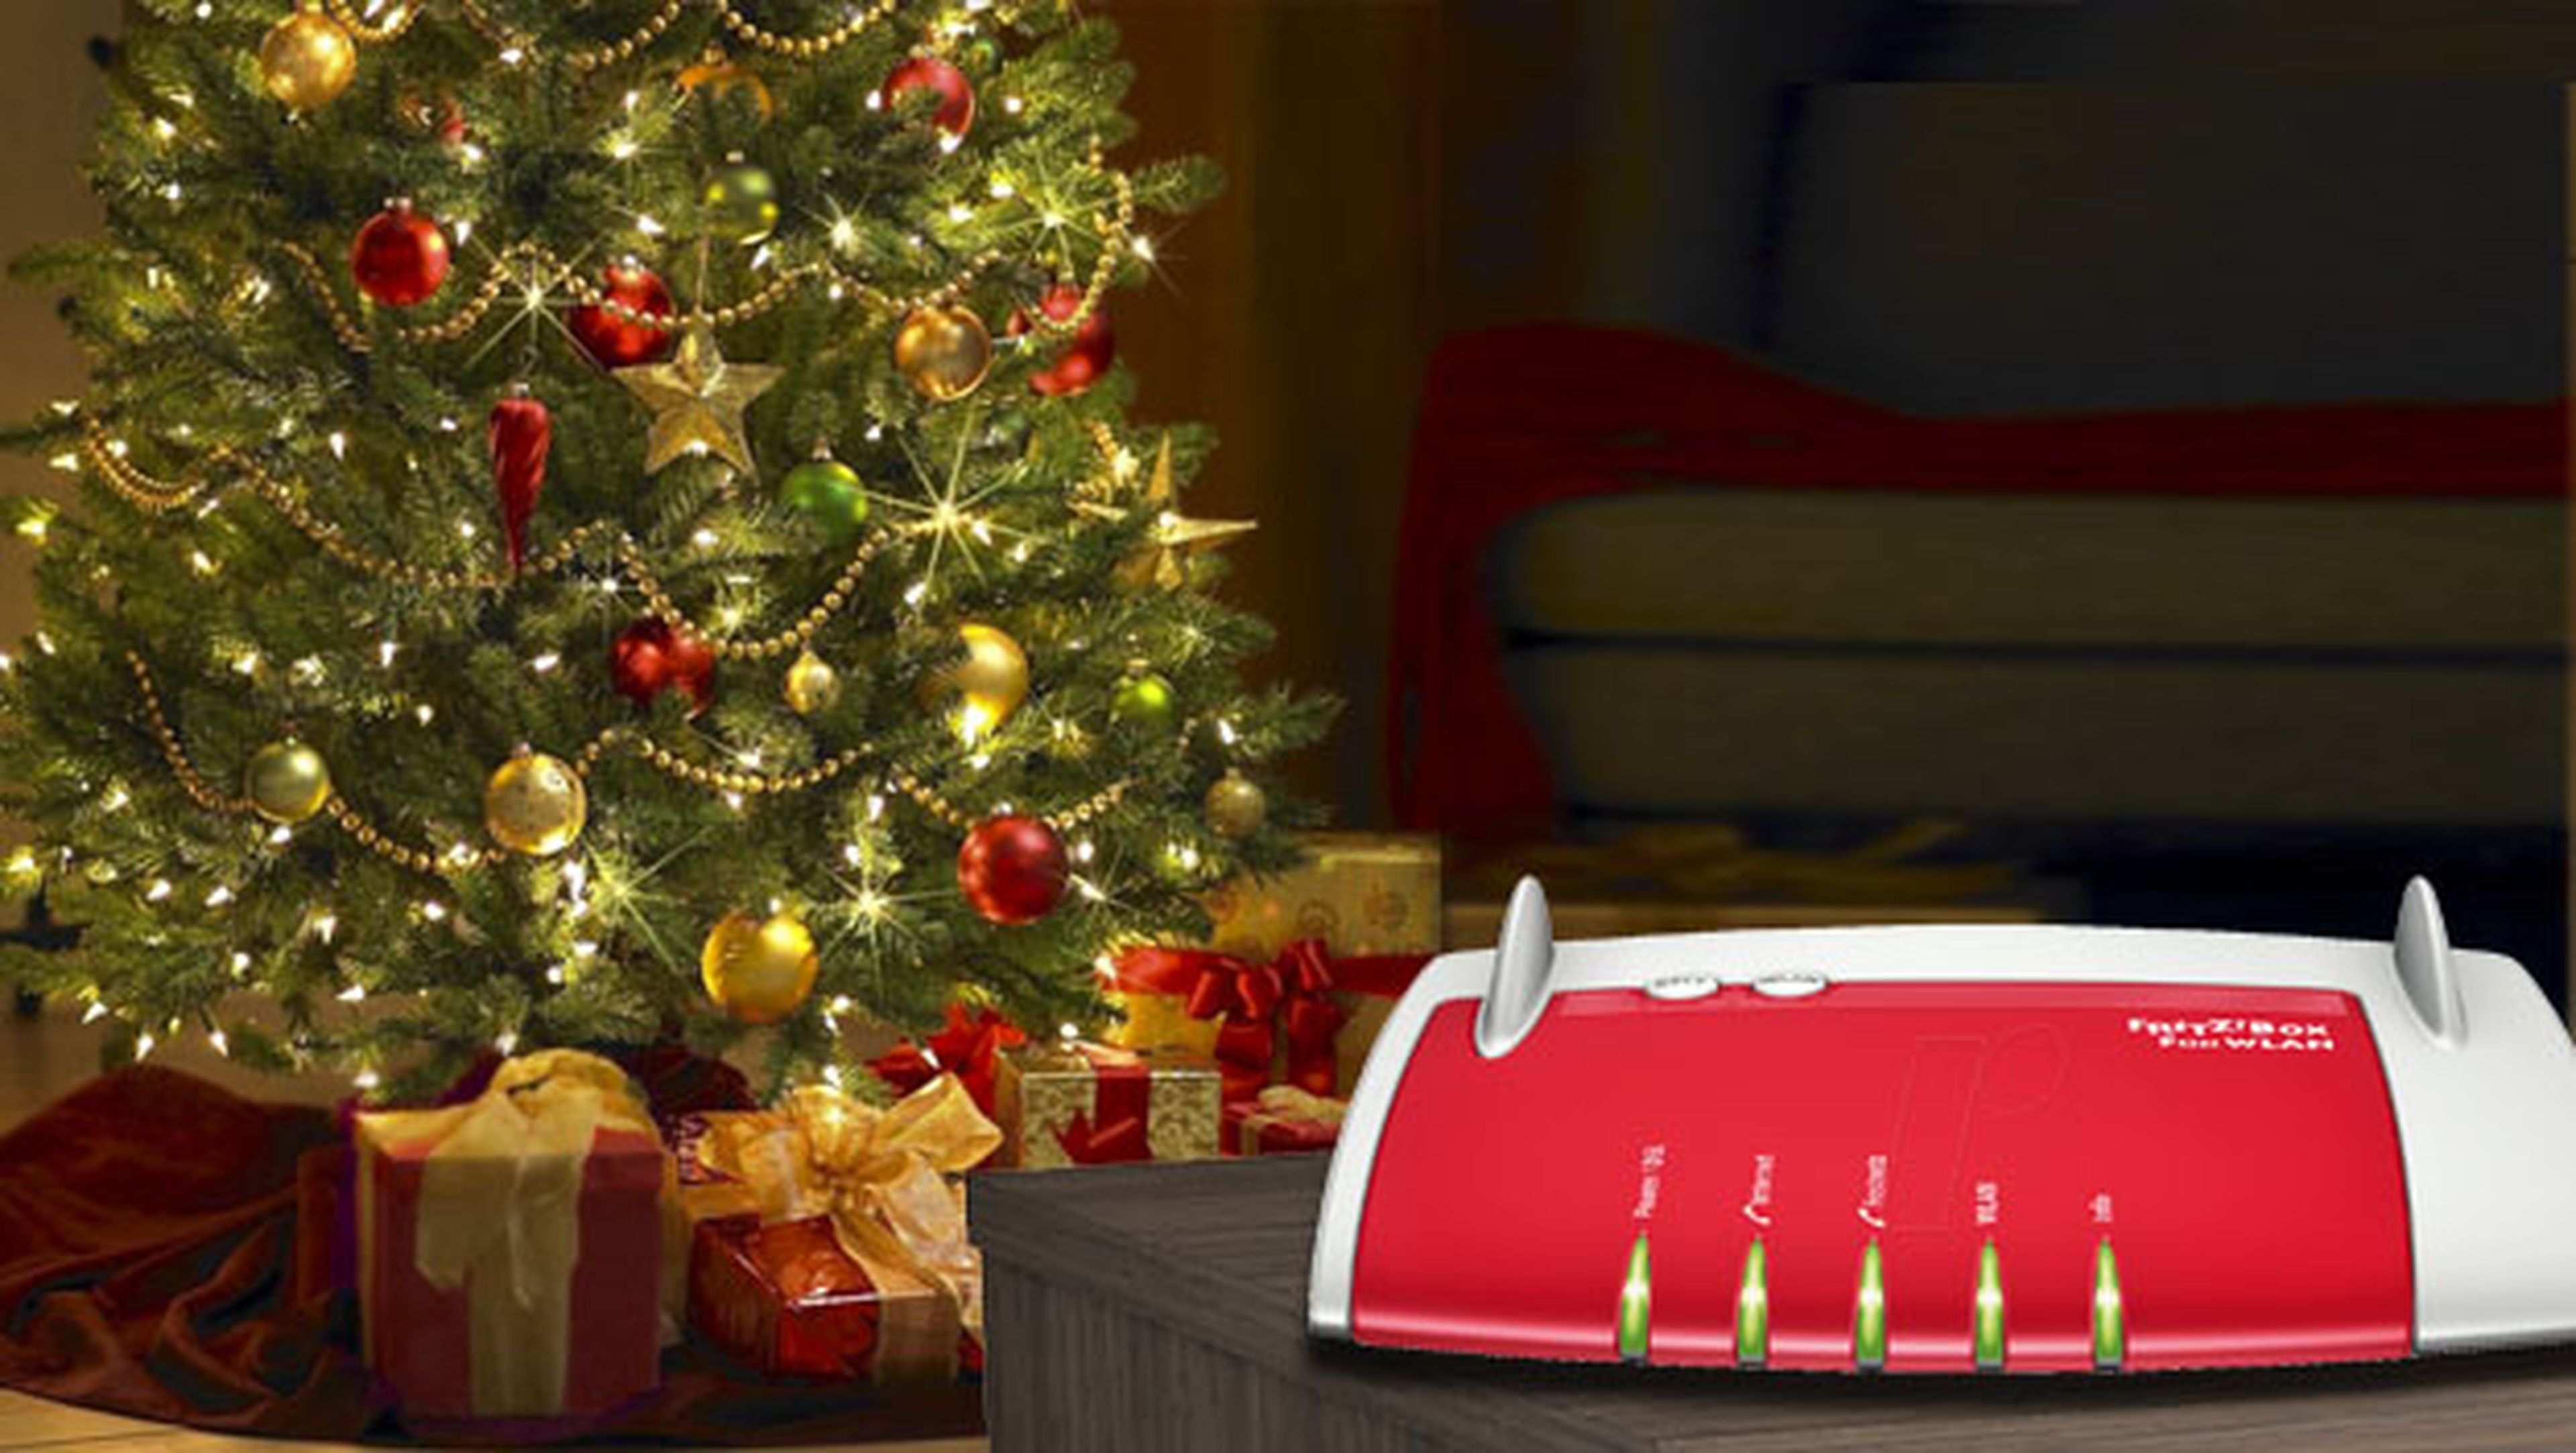 La iluminación navideña puede llegar a ralentizar tu WiFi